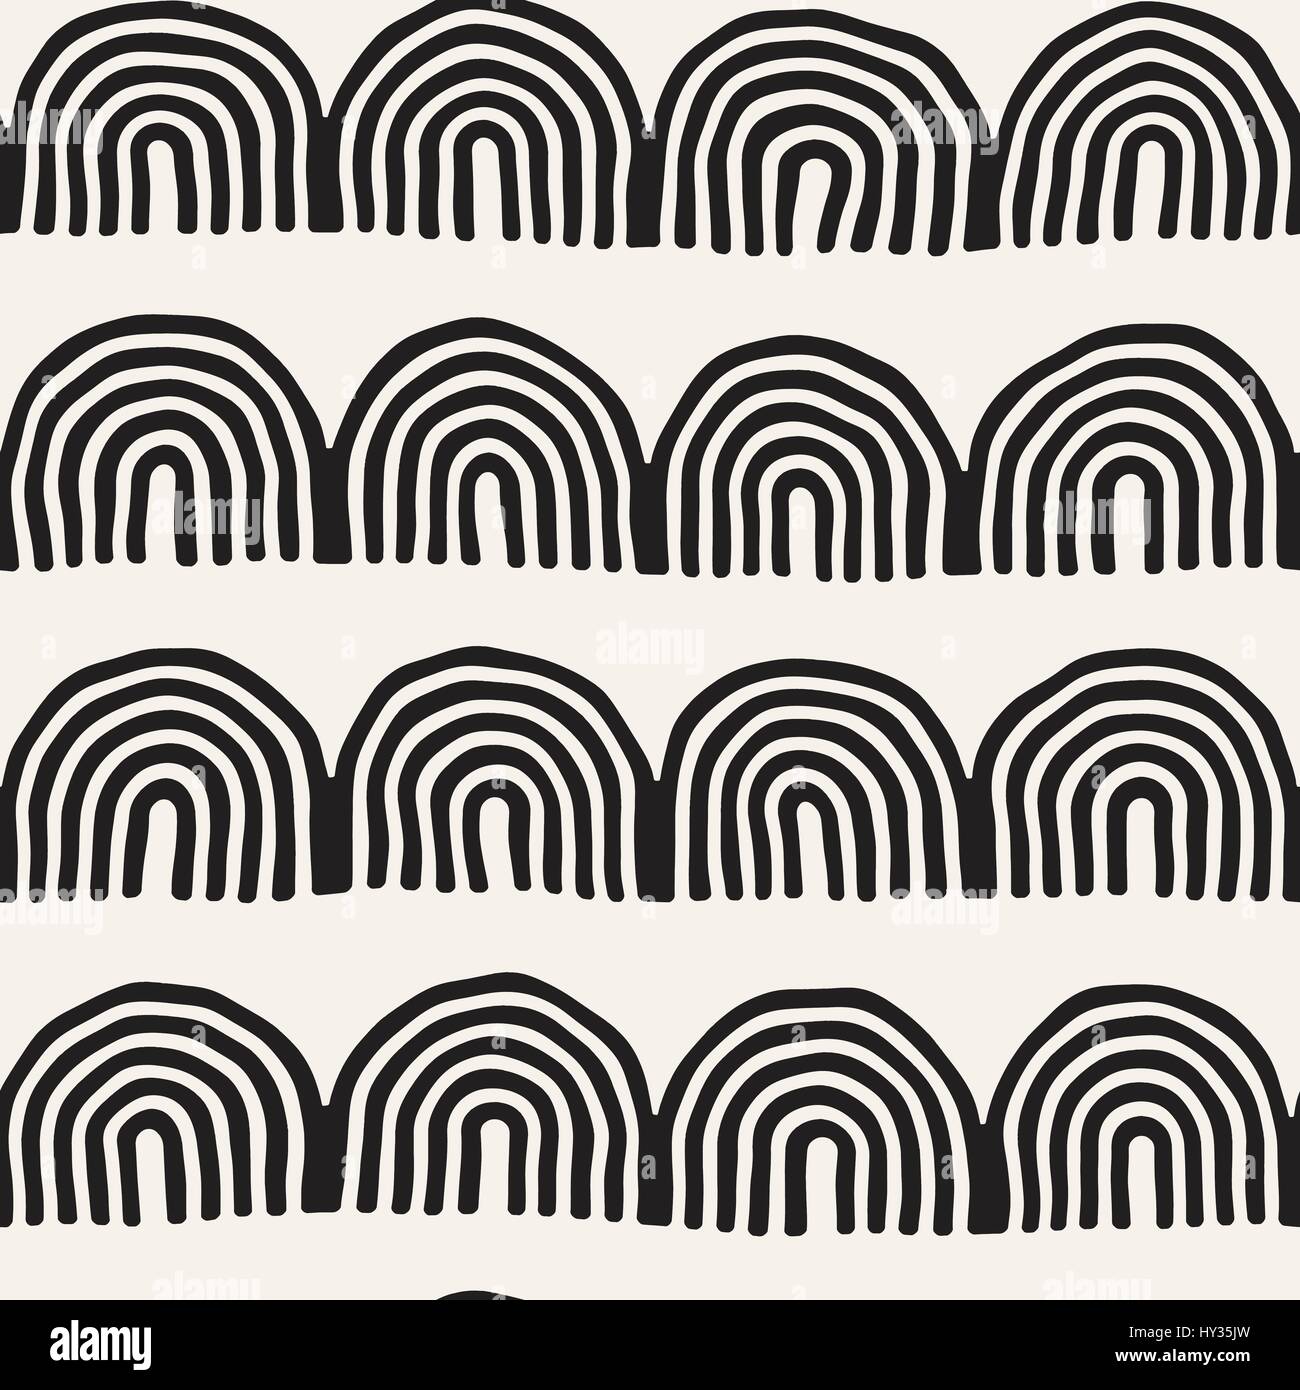 Monochrome minimalistisch Stammes-nahtlose Muster mit Bogen Linien. Vektor-Hintergrund mit inky schwarze Kunst auf weißen abgerundeten Streifen. Stock Vektor